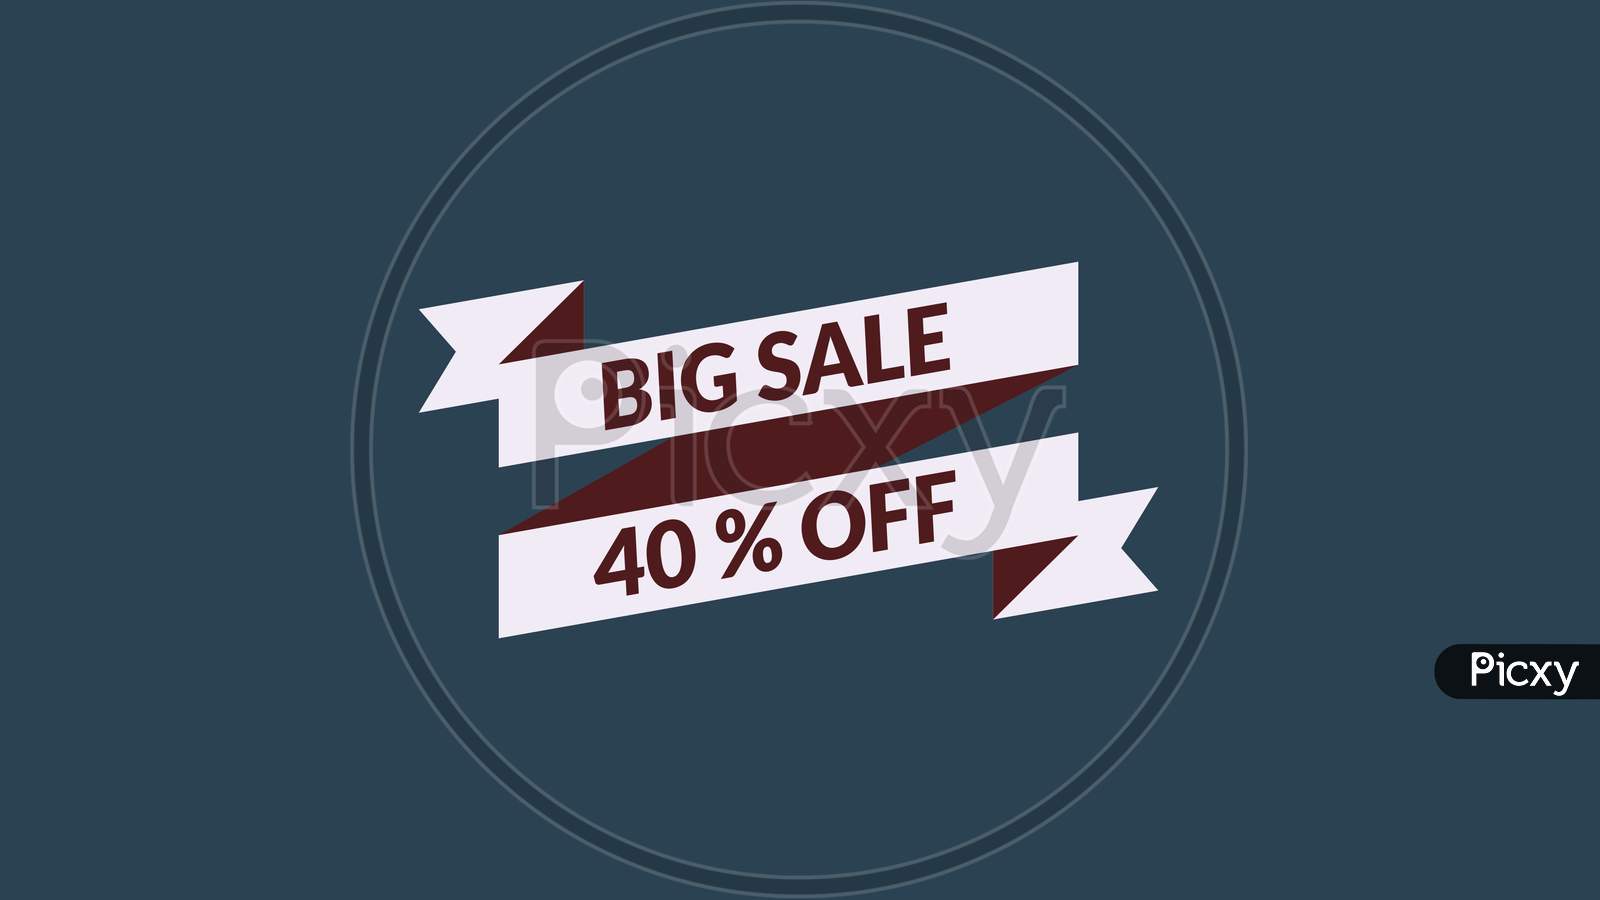 Big Sale 40% Off Word Illustration Use For Landing Page,Website, Poster, Banner, Flyer,Sale Promotion,Advertising, Marketing